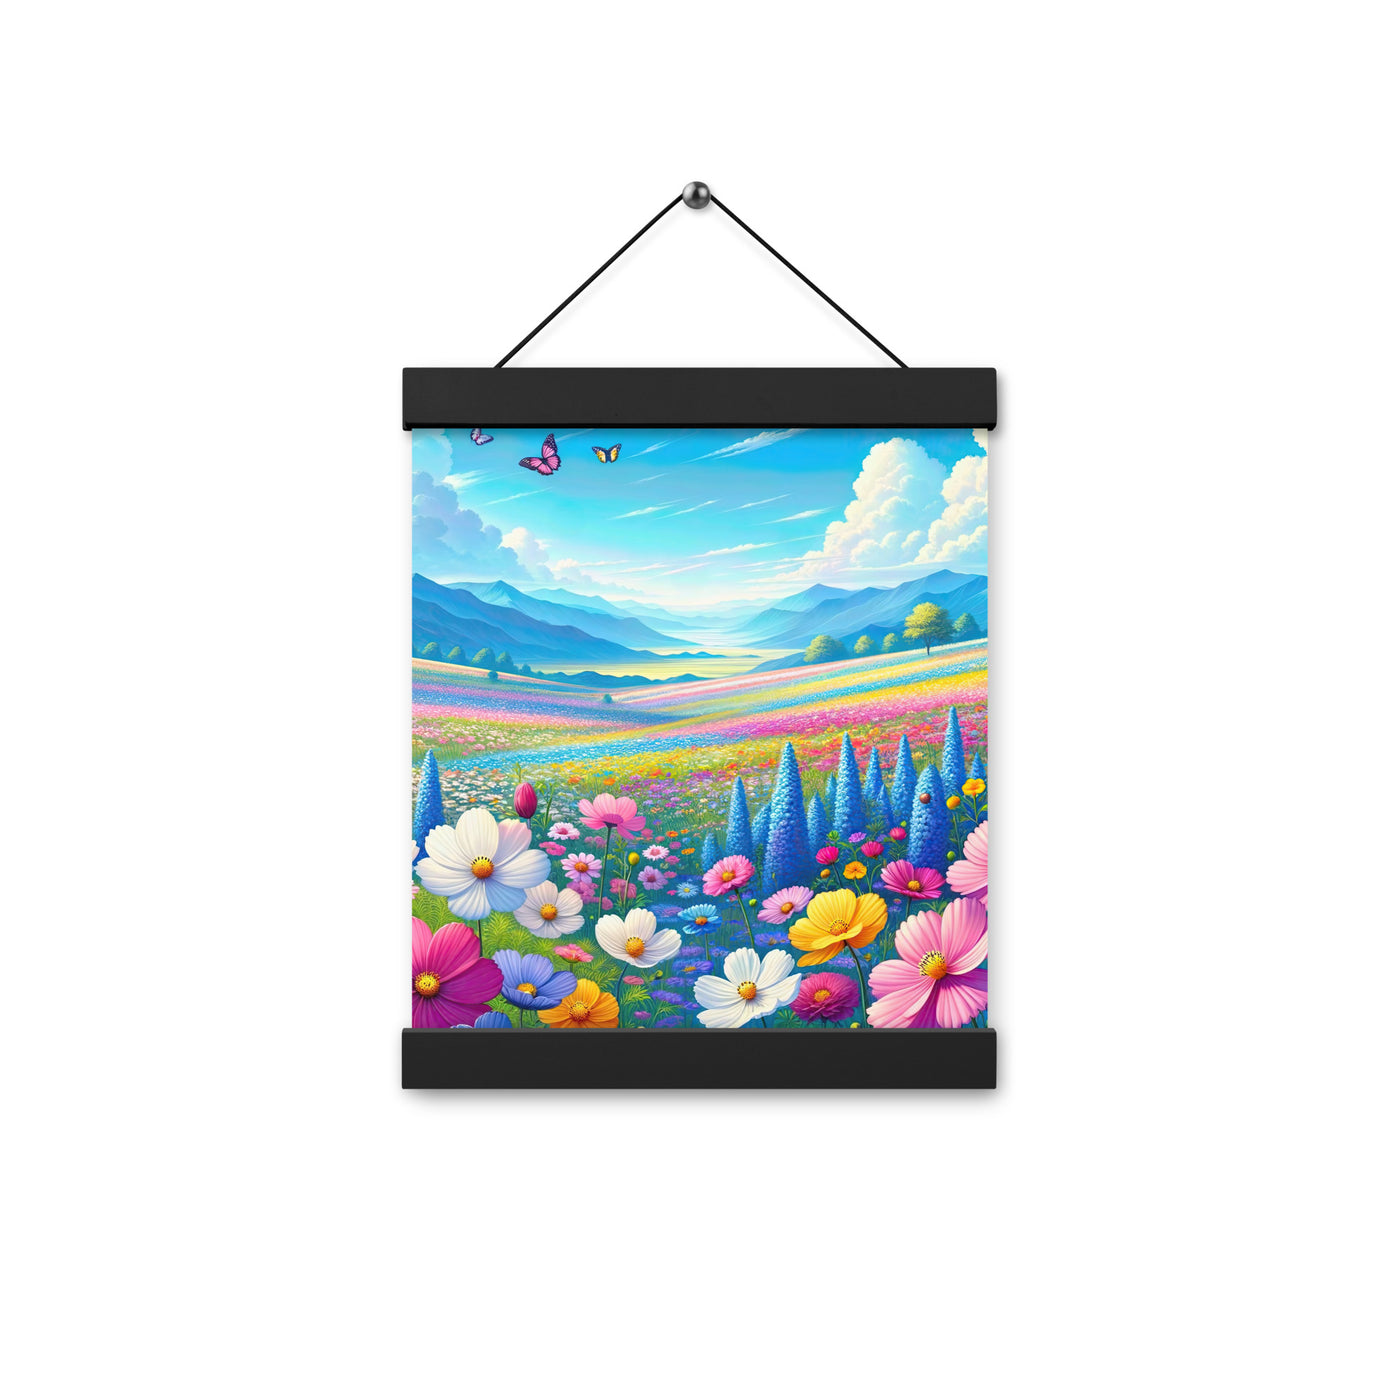 Weitläufiges Blumenfeld unter himmelblauem Himmel, leuchtende Flora - Premium Poster mit Aufhängung camping xxx yyy zzz 20.3 x 25.4 cm